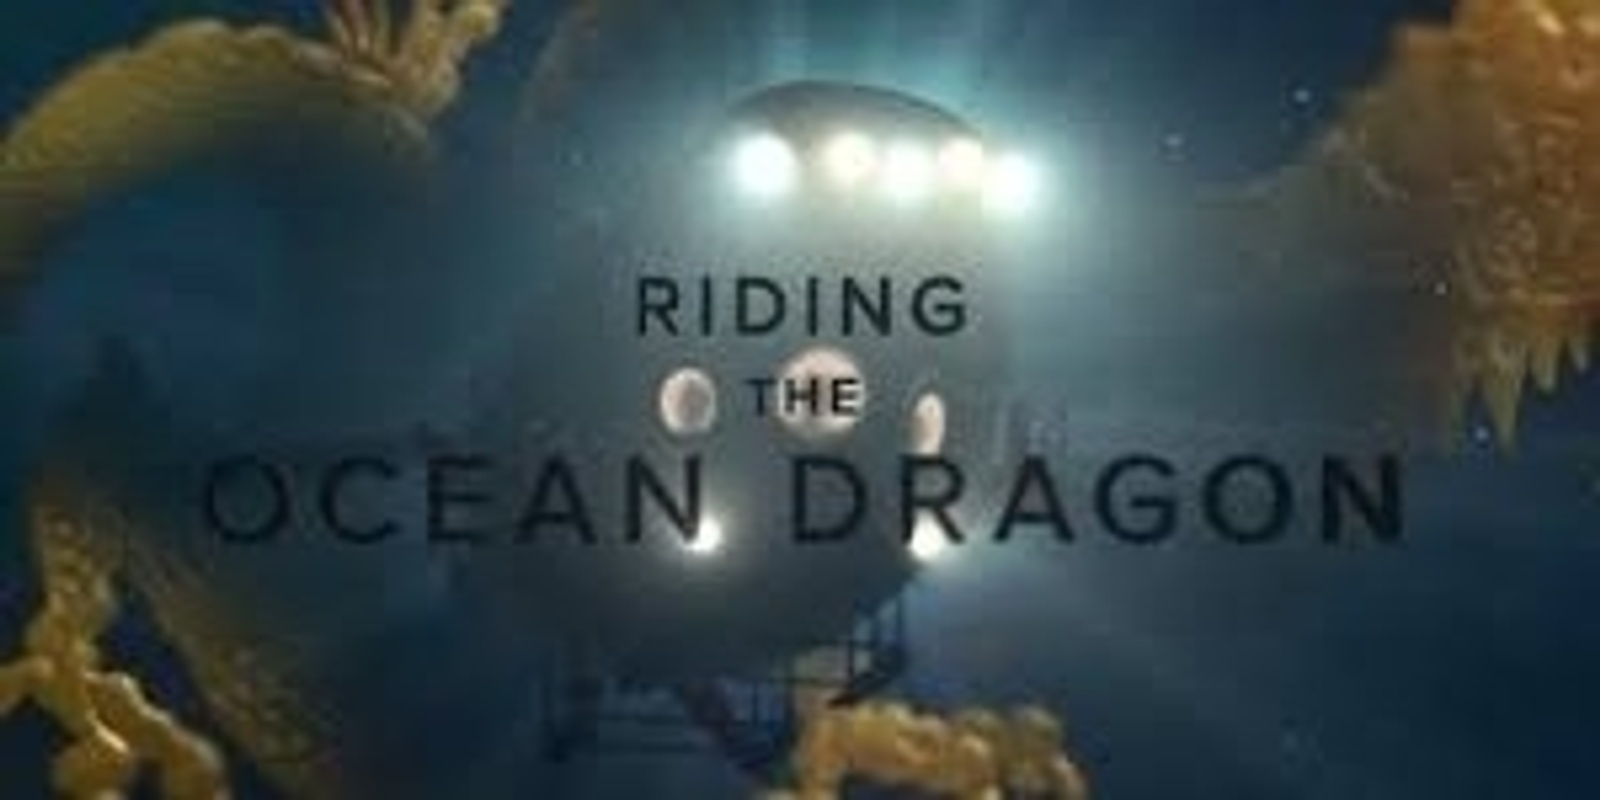 Banner image for Riding The Ocean Dragon - Ocean Lovers Festival